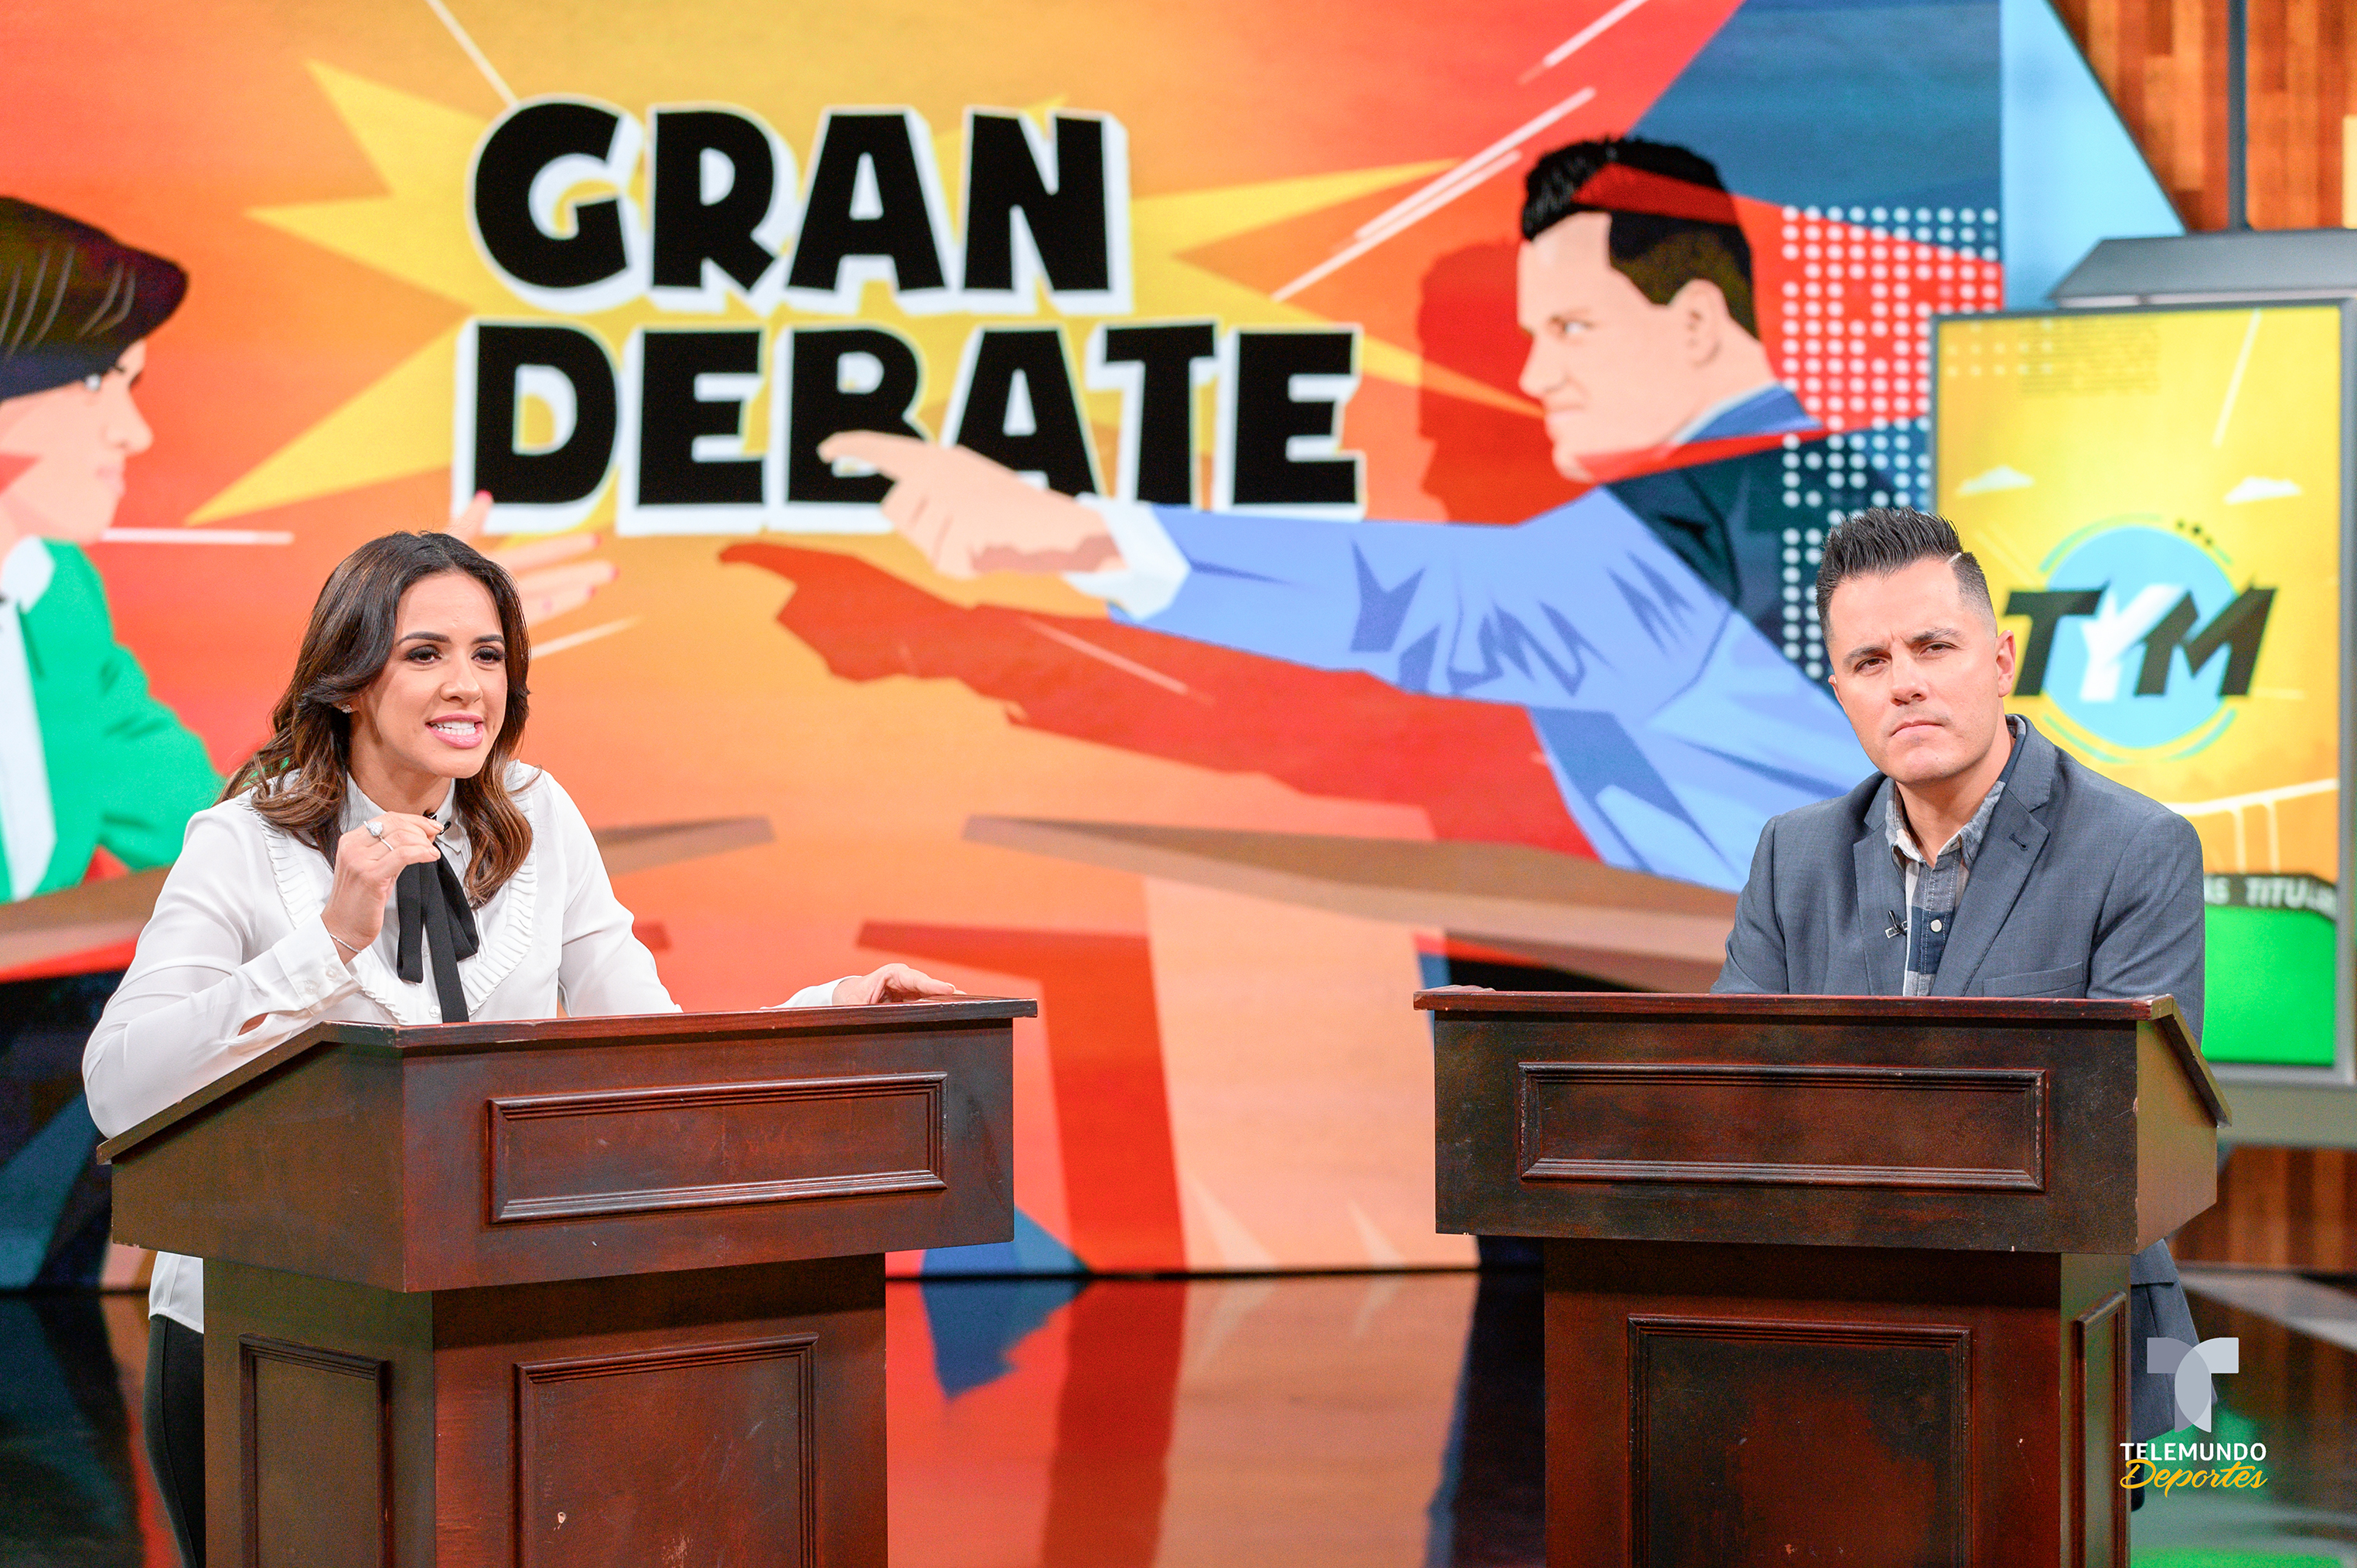 El show incluirá más debate. En la imagen, Jurka y Mendiburu. / Foto: Telemundo